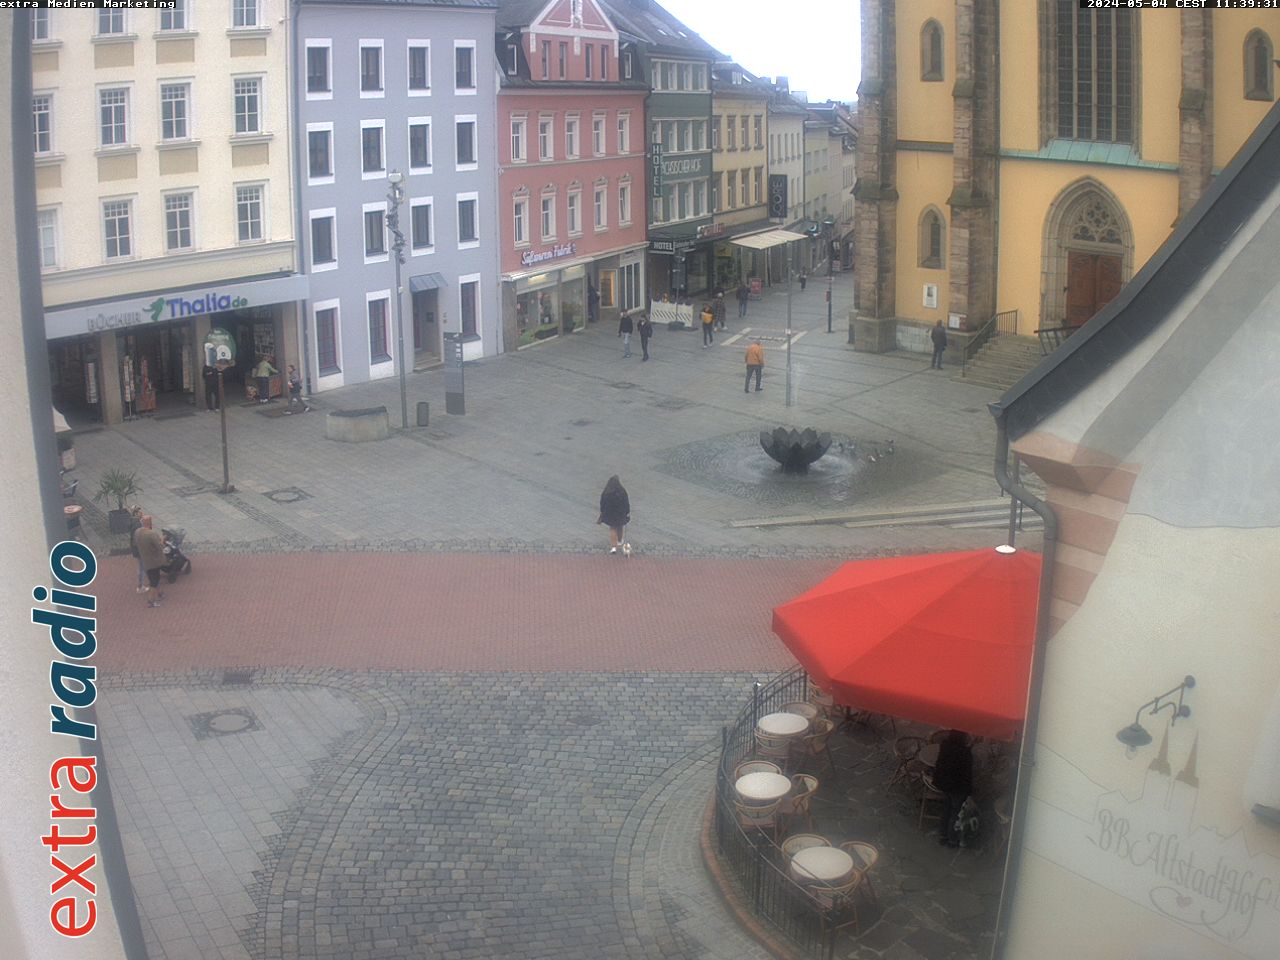 Webcam Hof Altstadt - Webcam Hof Altstadt in der ErlebnisRegion Fichtelgebirge